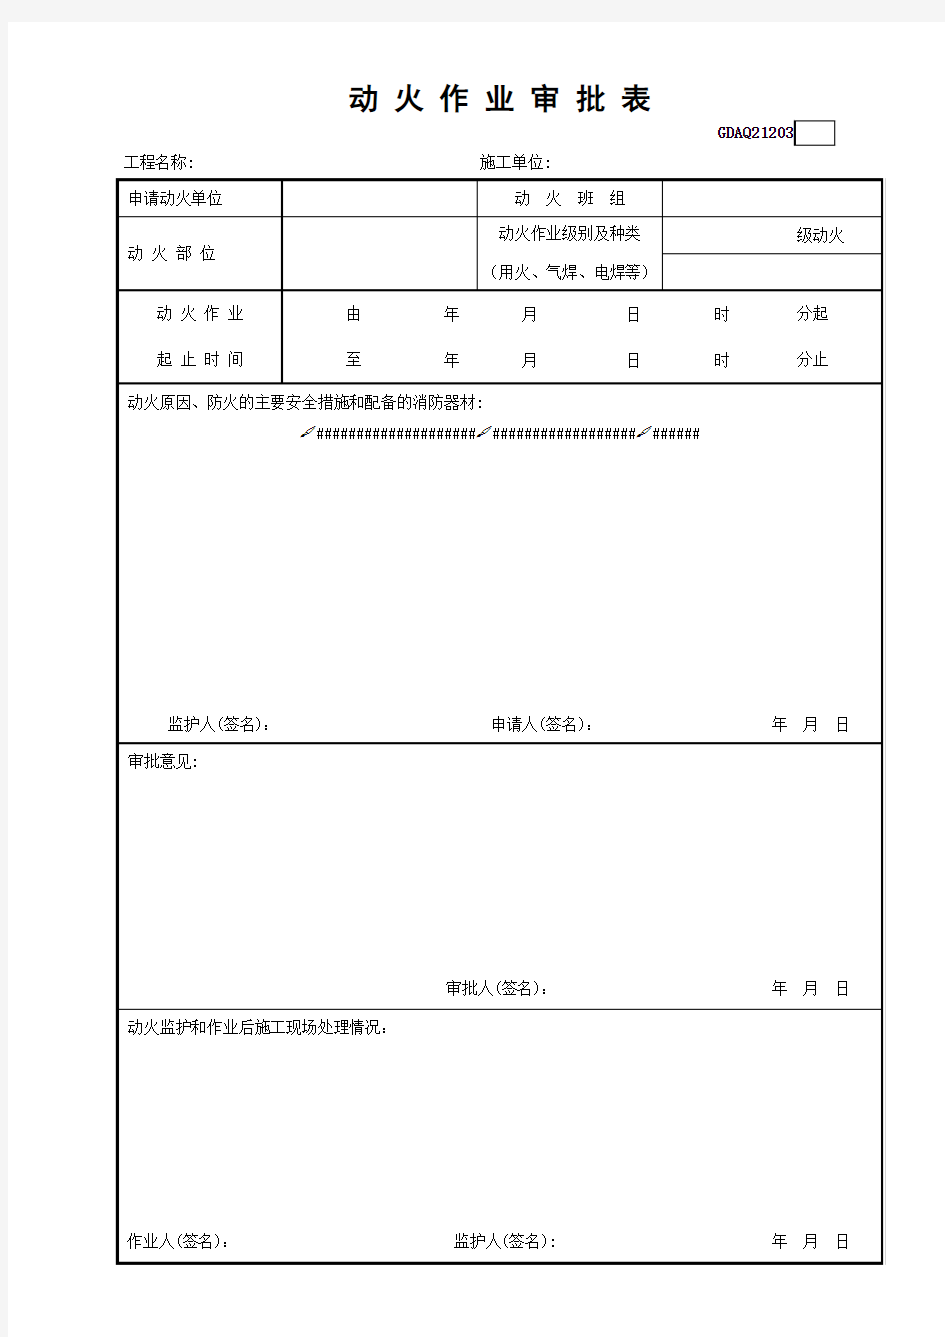 动火作业审批表GDAQ21203